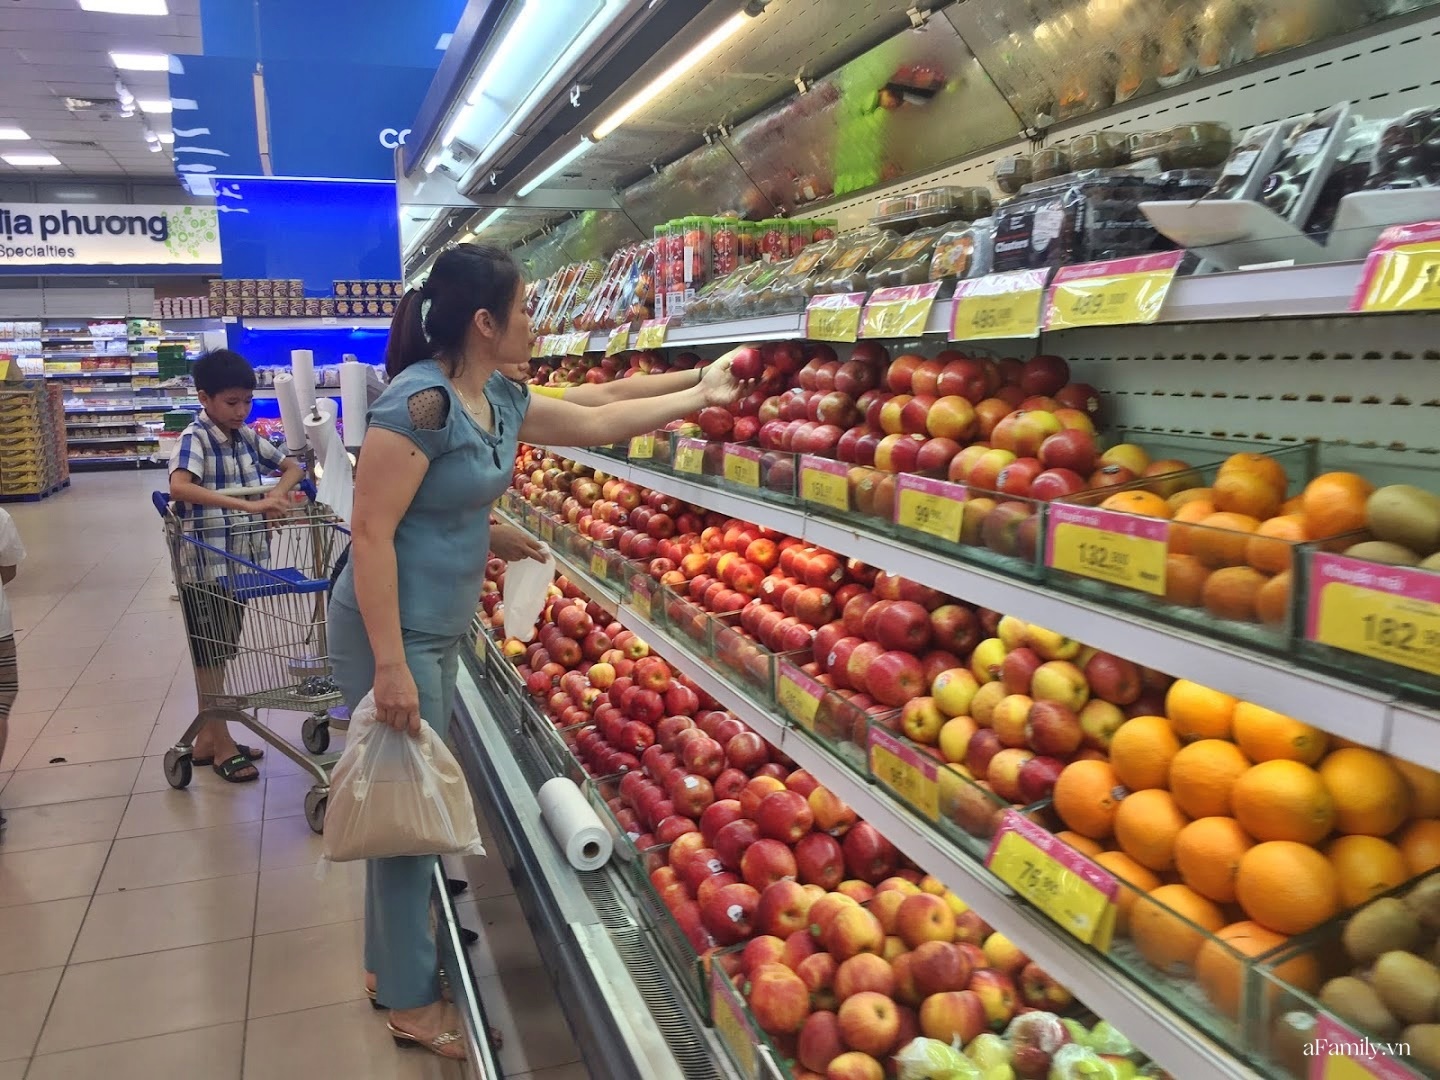 Tỷ lệ hàng Việt chiếm phần lớn tại các siêu thị, bà nội trợ chia sẻ hơn 70% đồ tiêu dùng trong nhà có xuất xứ quê hương - Ảnh 2.